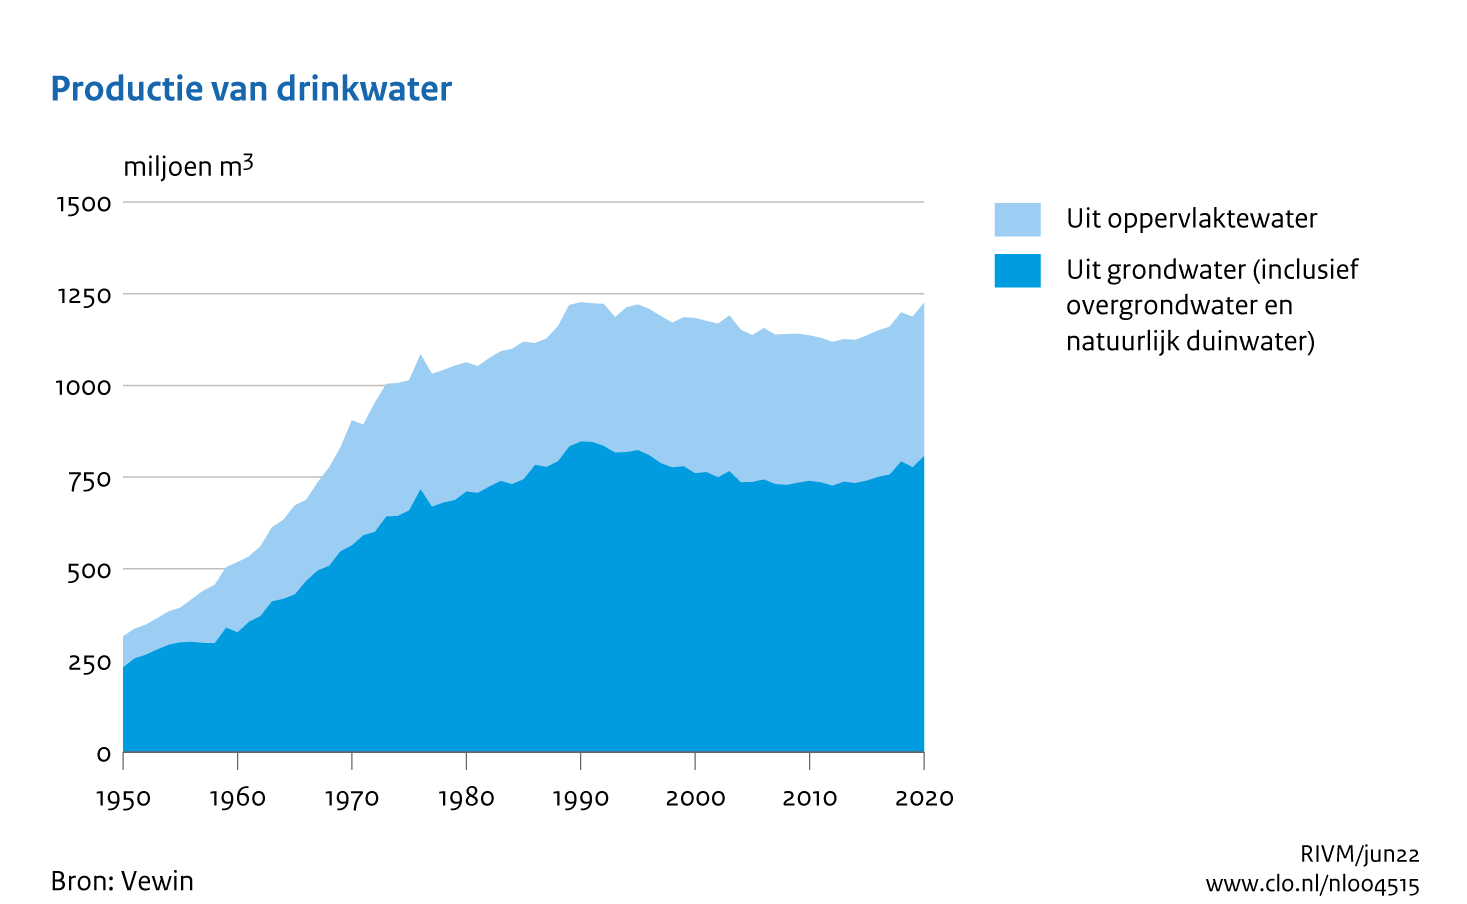 Figuur Trend productie van drinkwater. In de rest van de tekst wordt deze figuur uitgebreider uitgelegd.